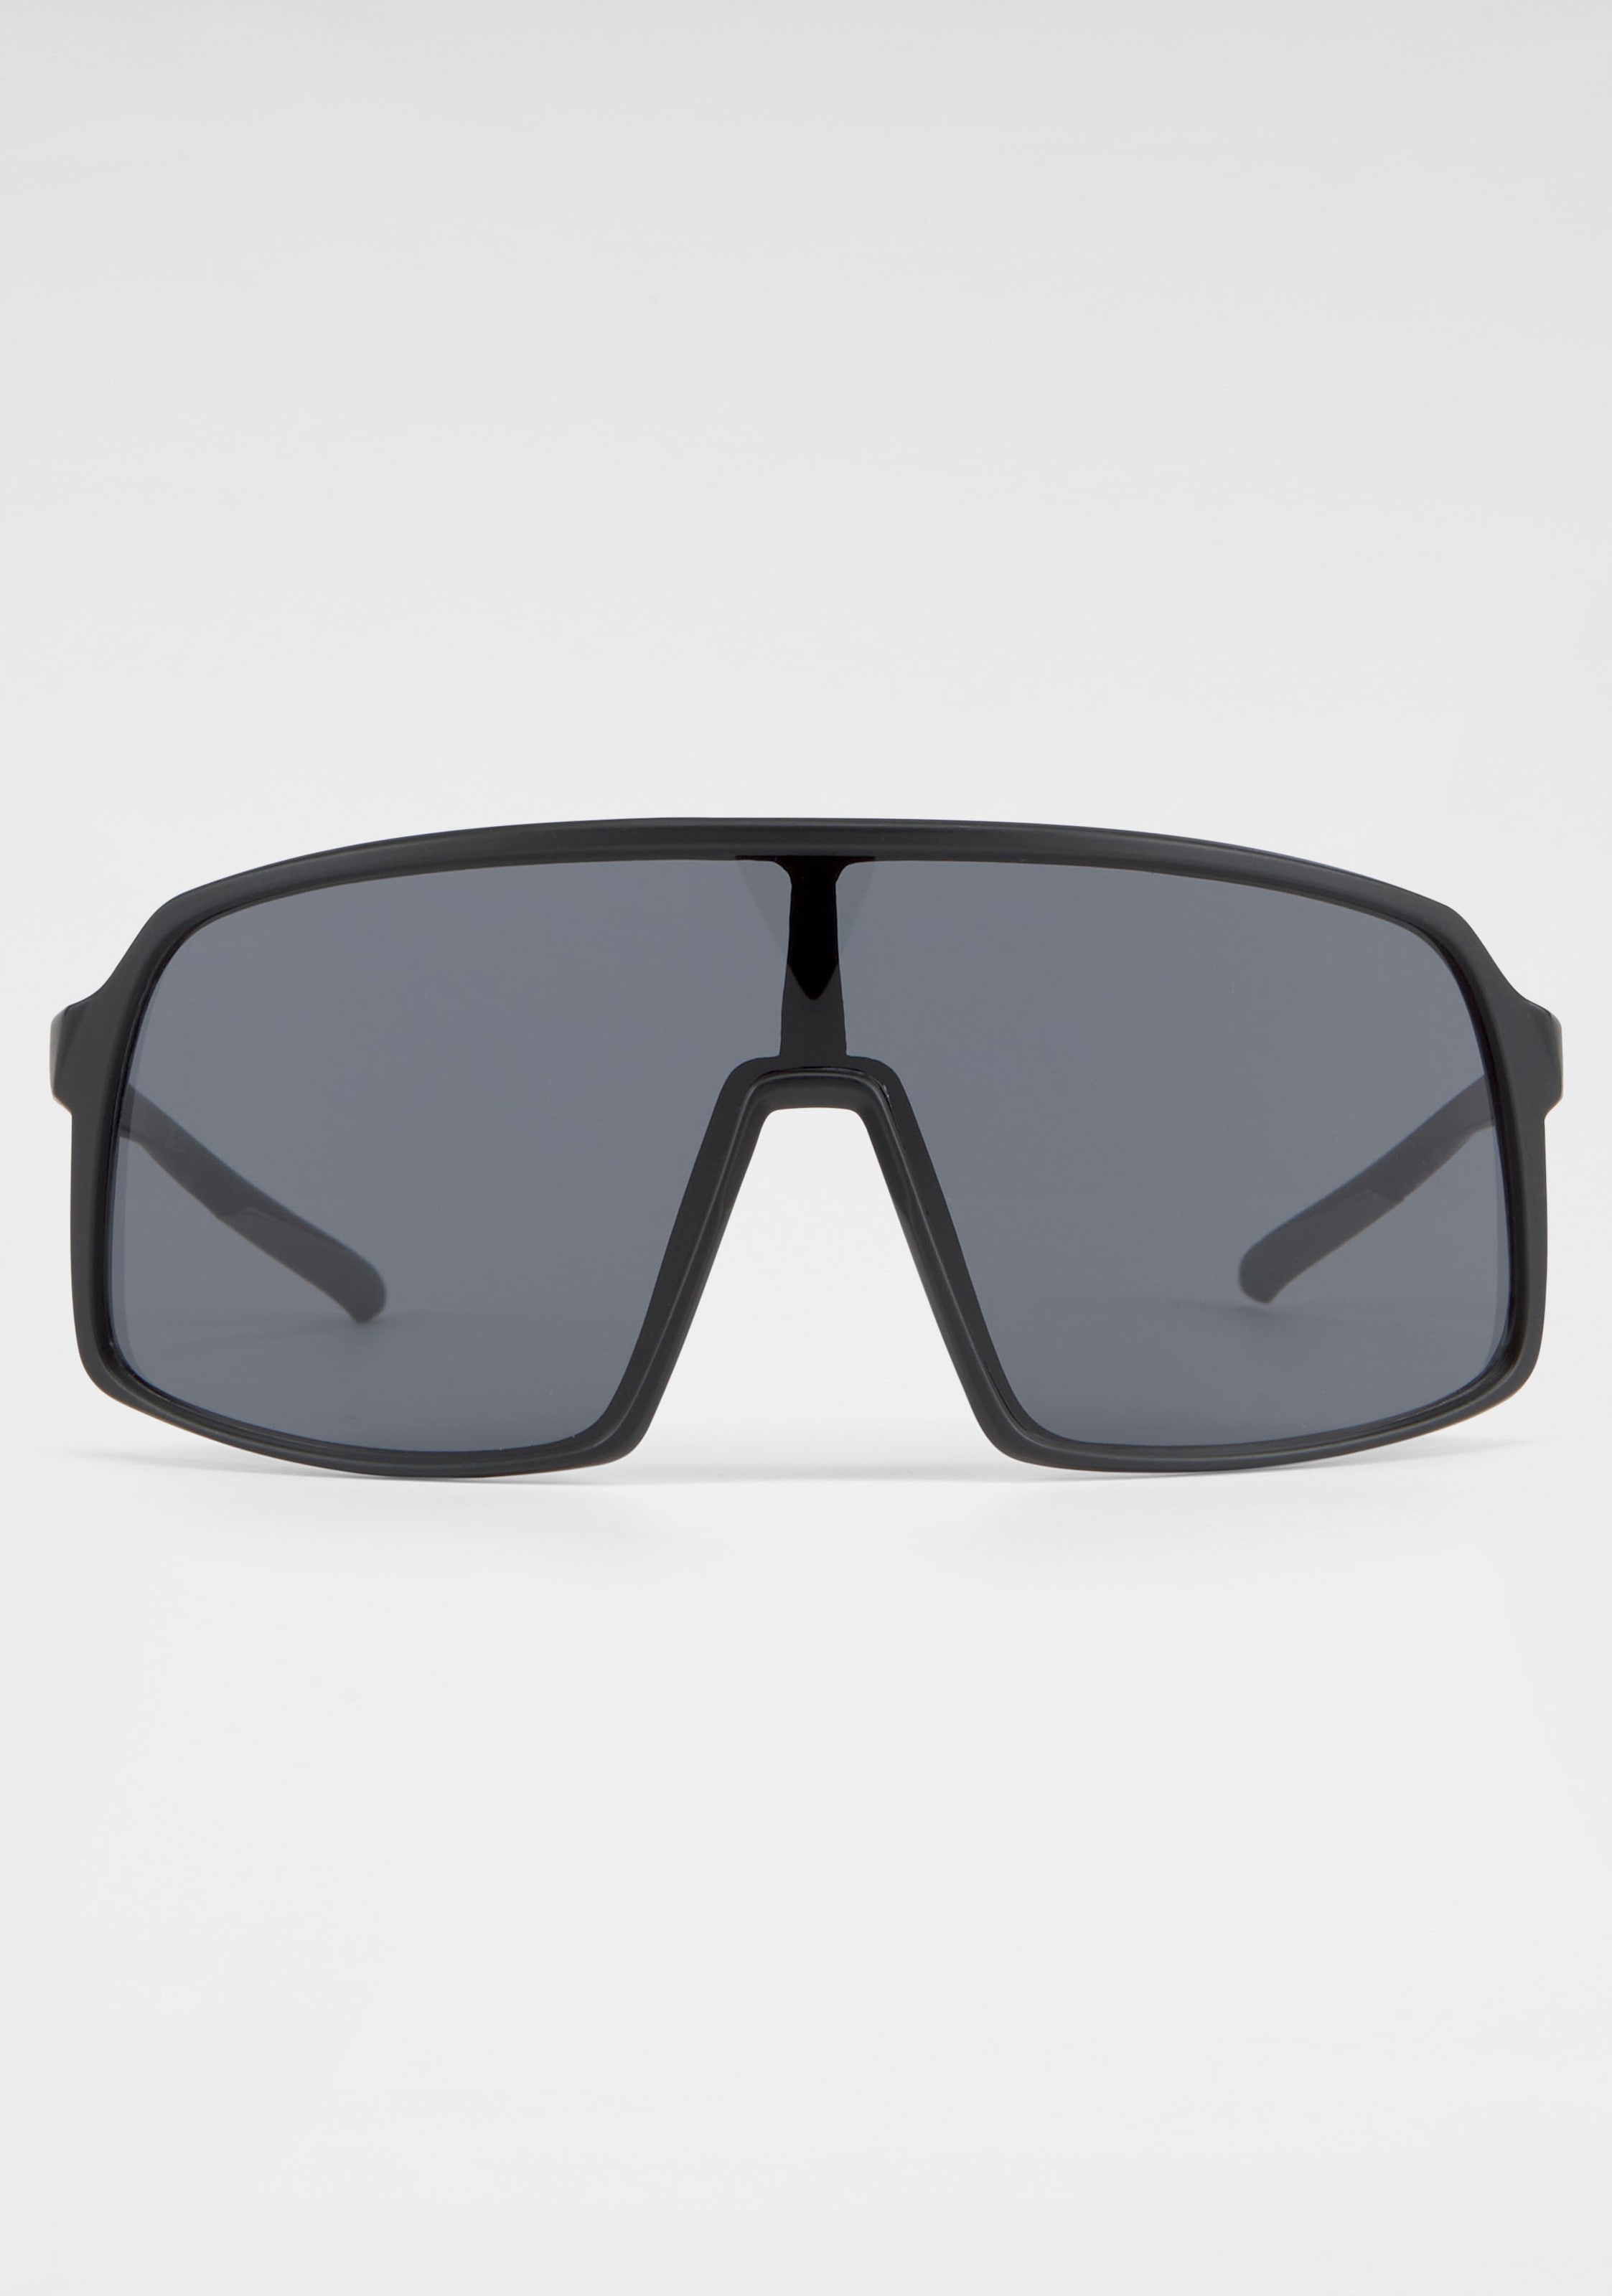 BACK IN BLACK | Sonnenbrille, für BAUR Gläser bestellen große Eyewear